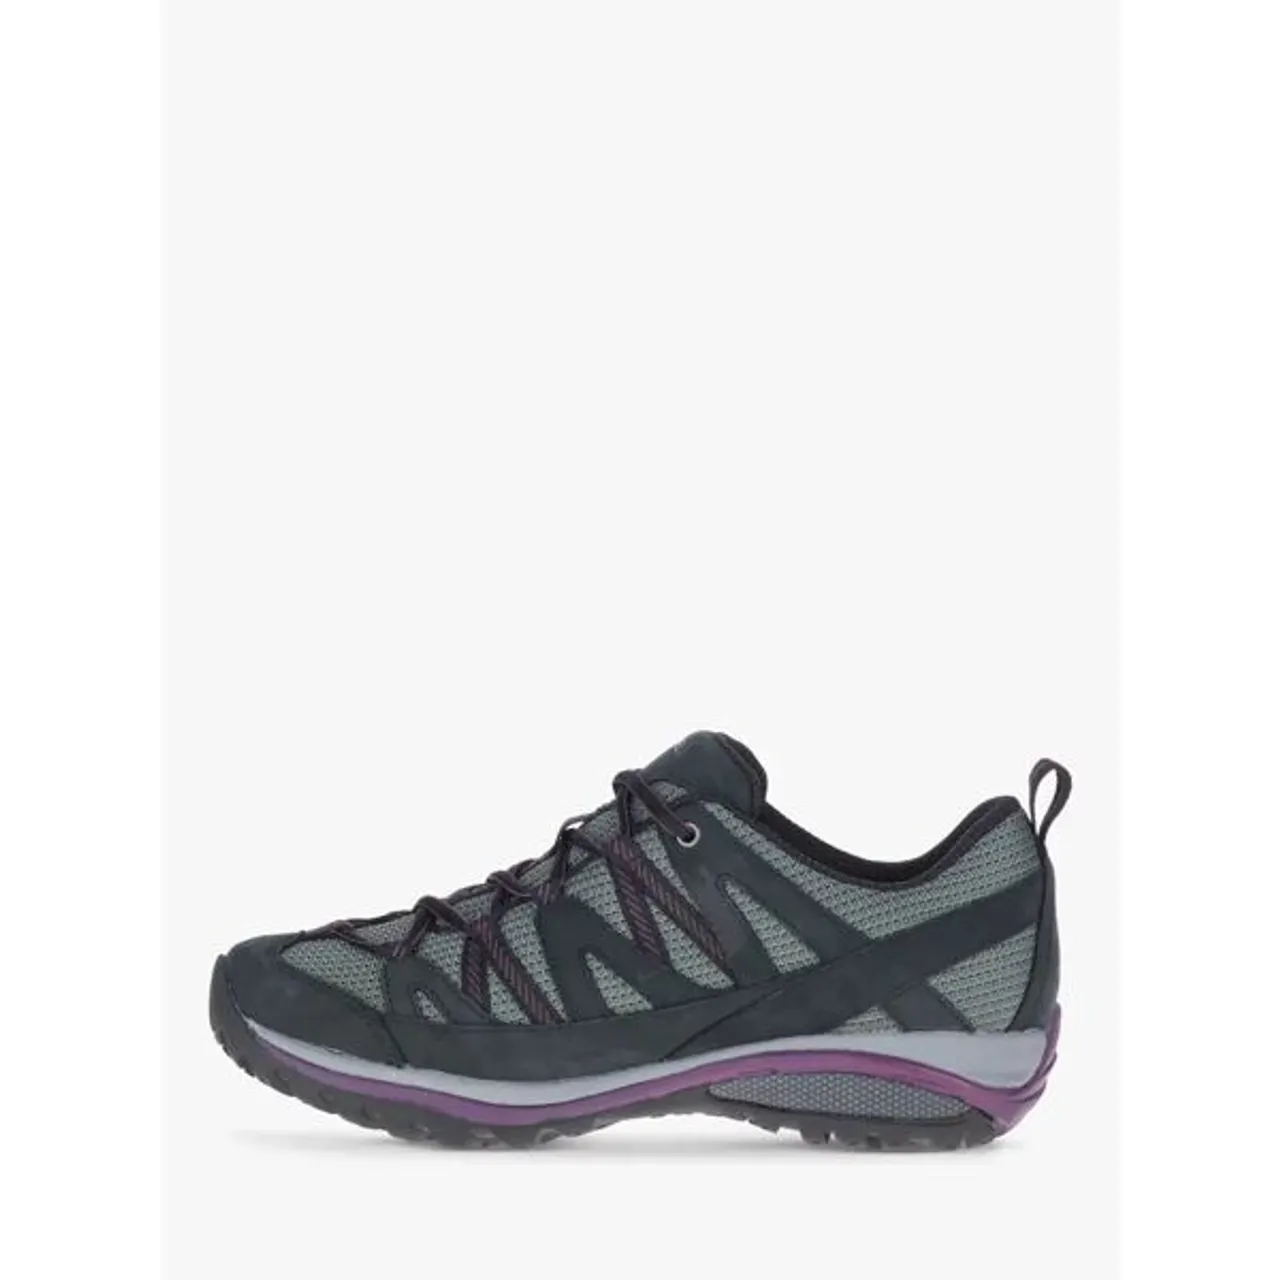 Merrell Siren Sport Women's Waterproof Gore-Tex Walking Shoes, Black/Blackberry - Black/Blackberry - Female